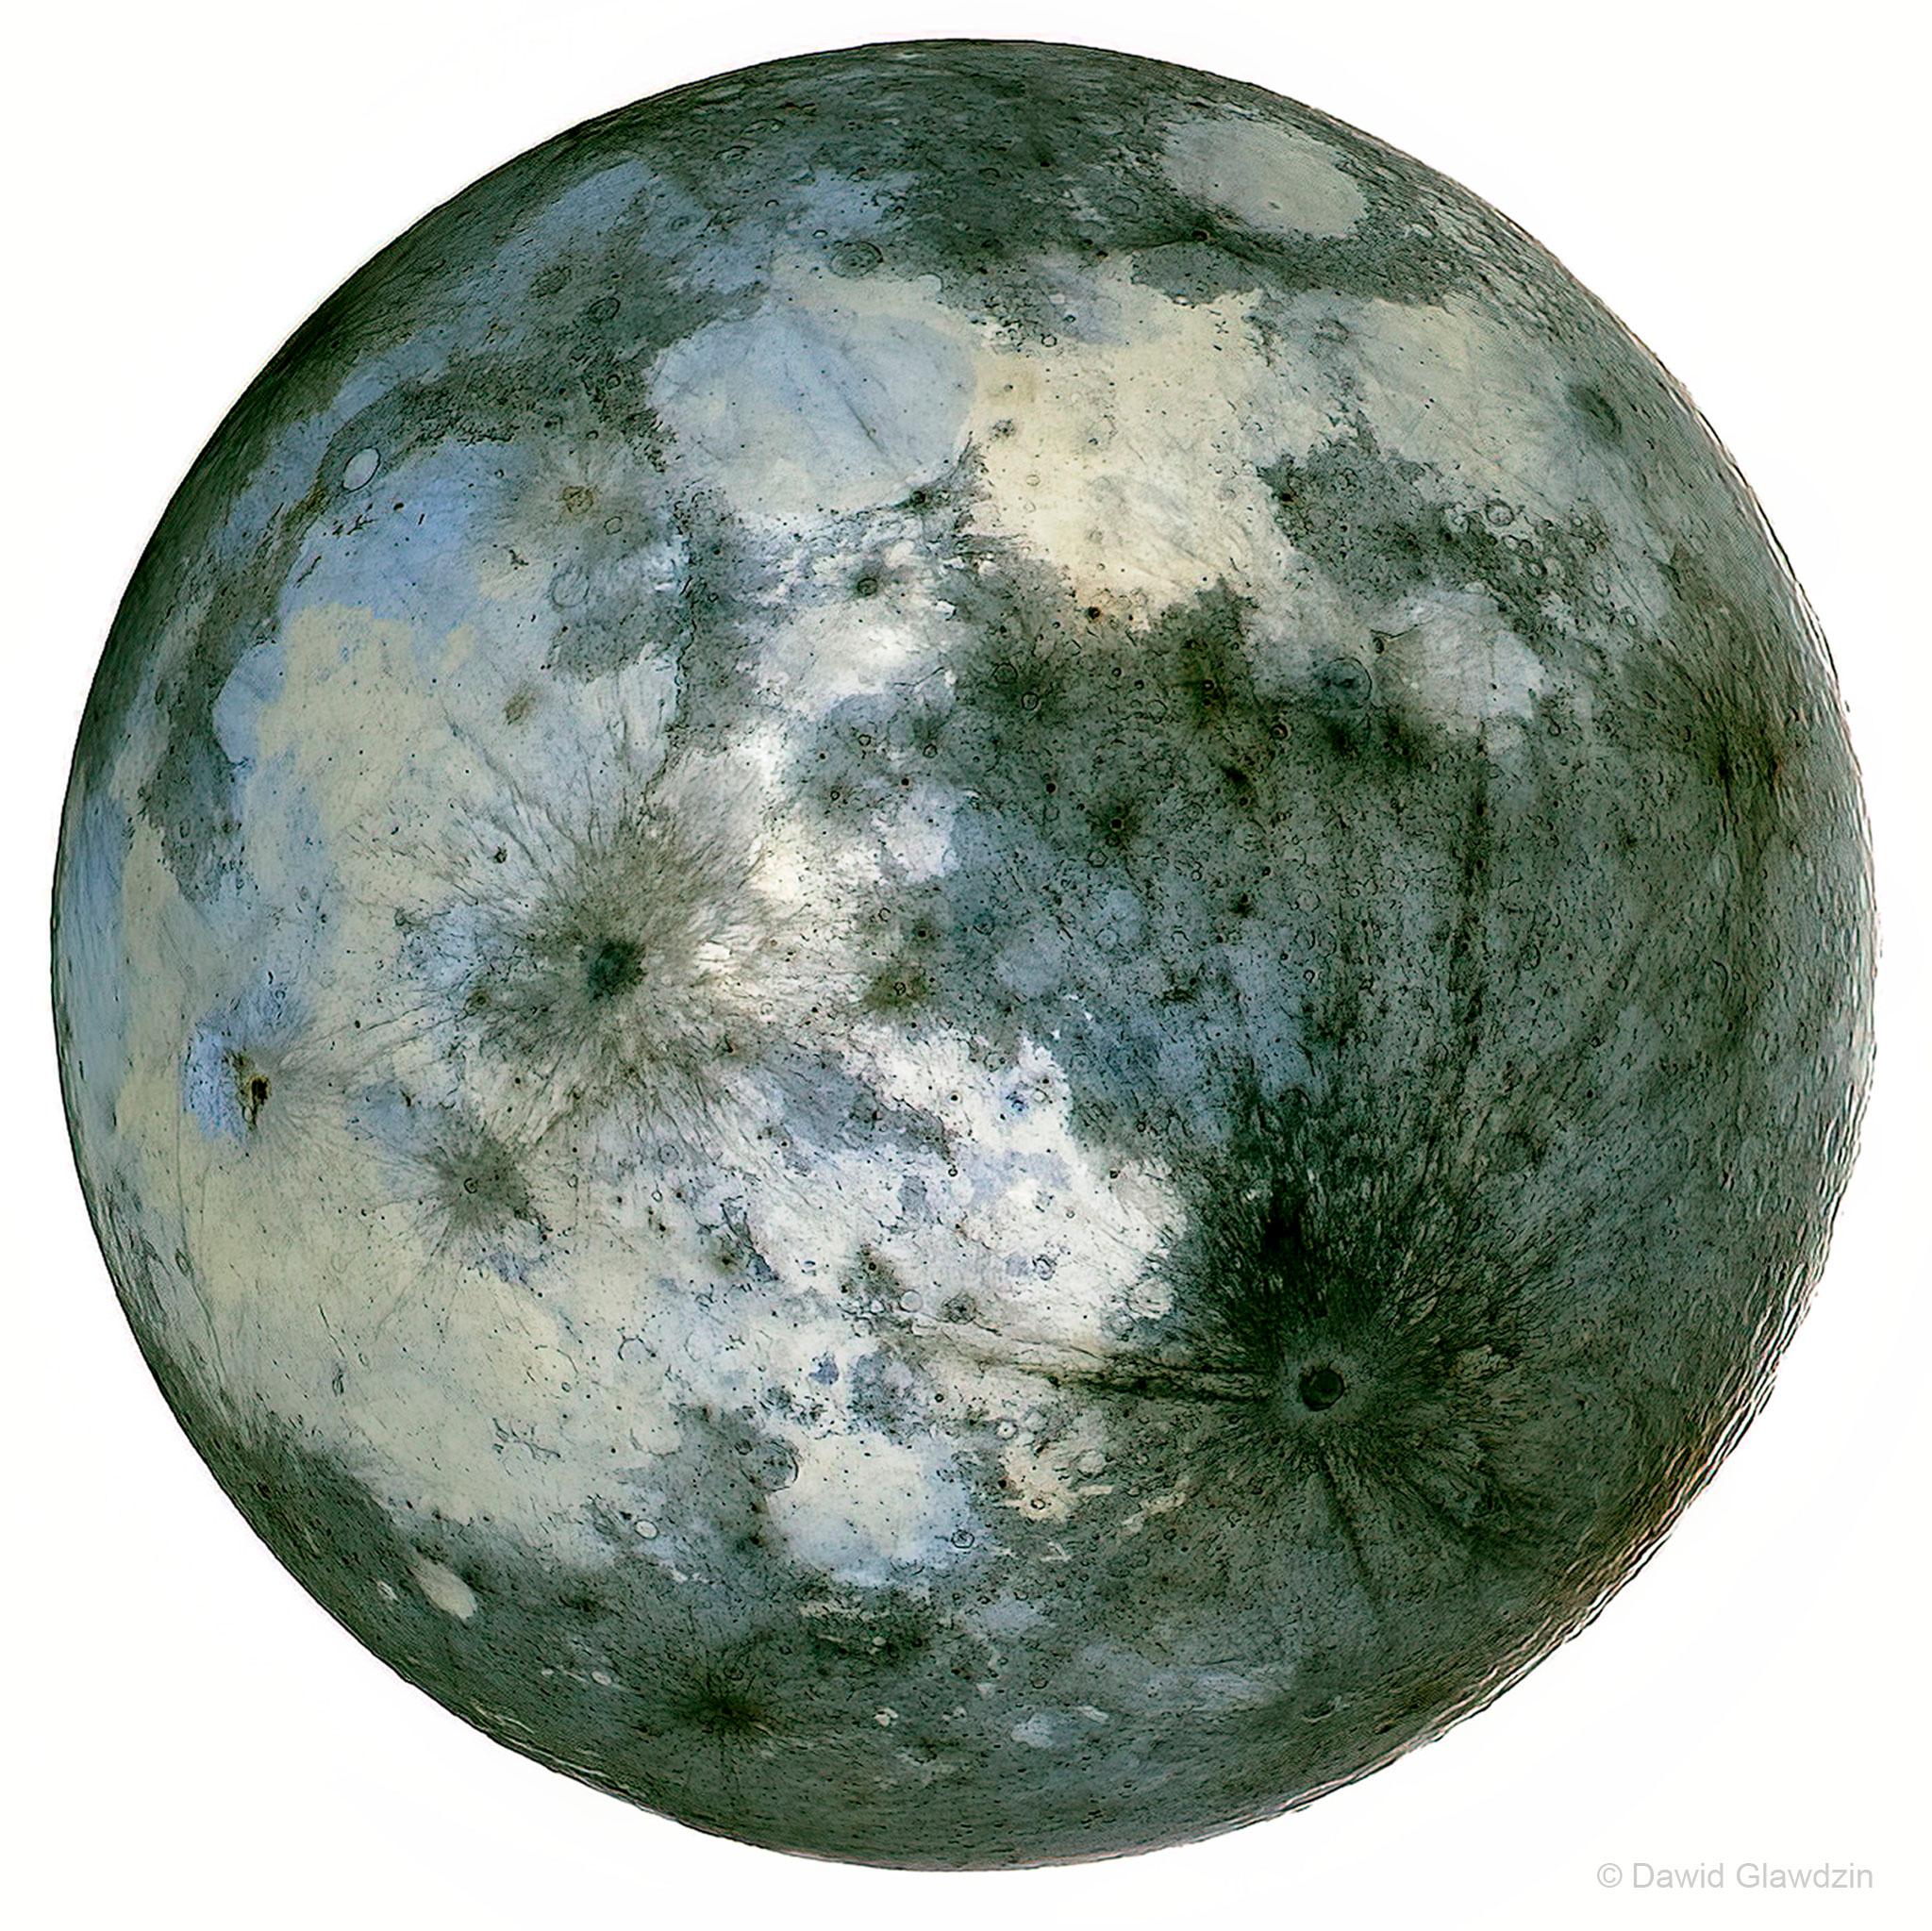 صورة للقمر بألوان معكوسة يظهر ككرة فضّيّة بعض أجزائها أملس